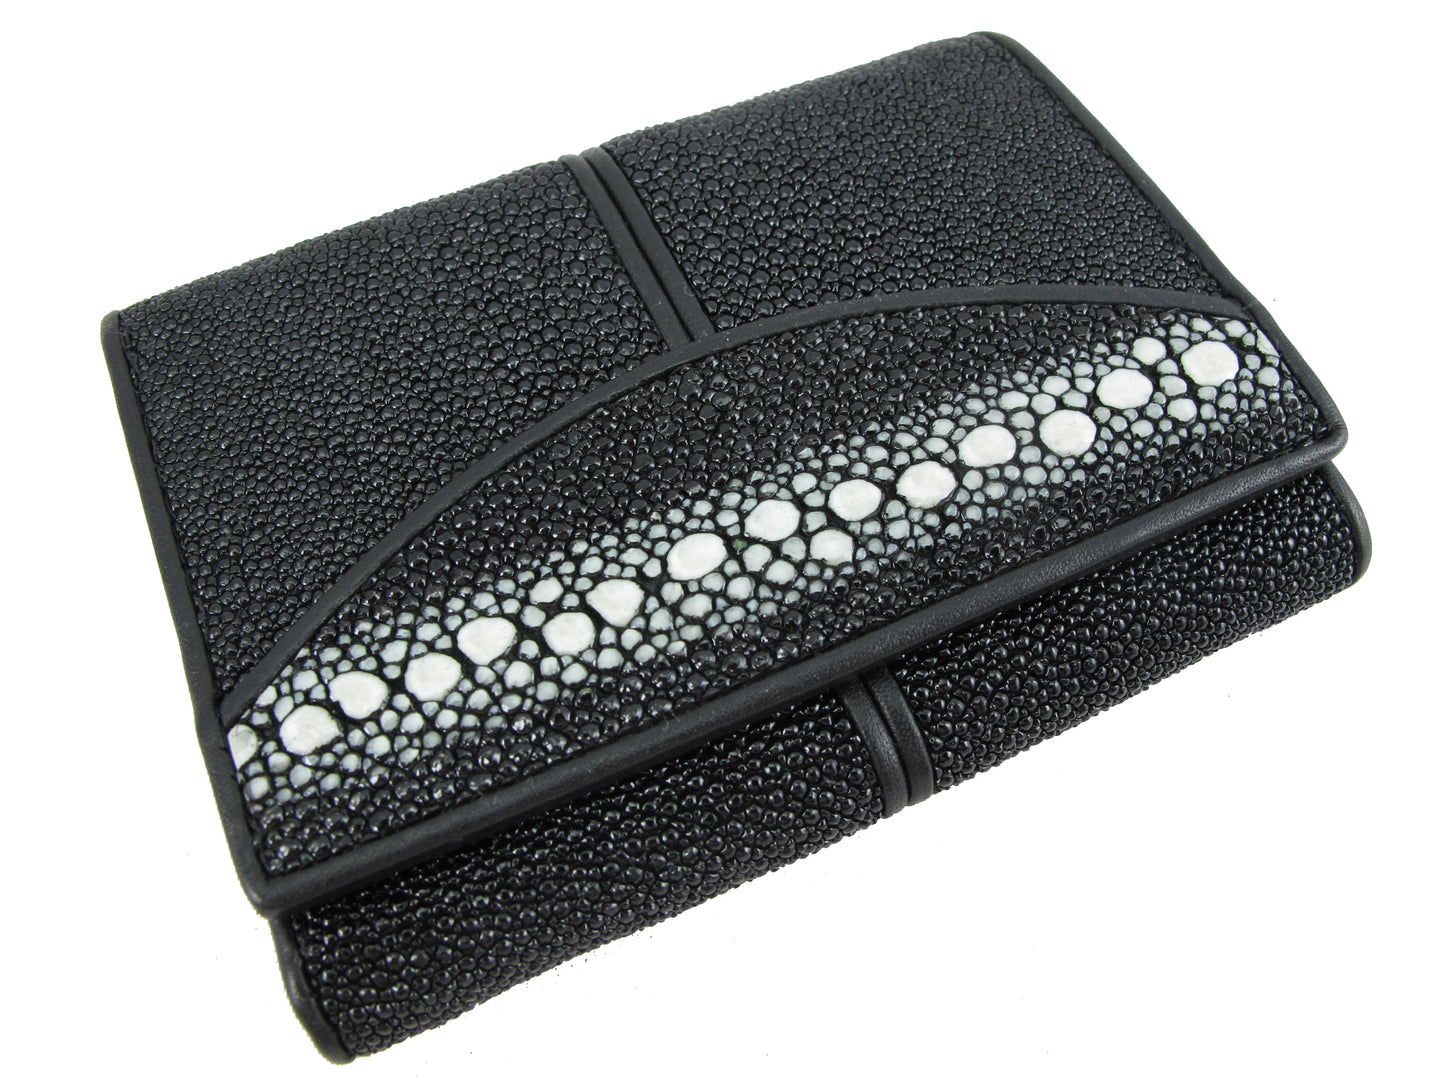 Genuine Row Stingray Skin Leather Mini Trifold Wallet